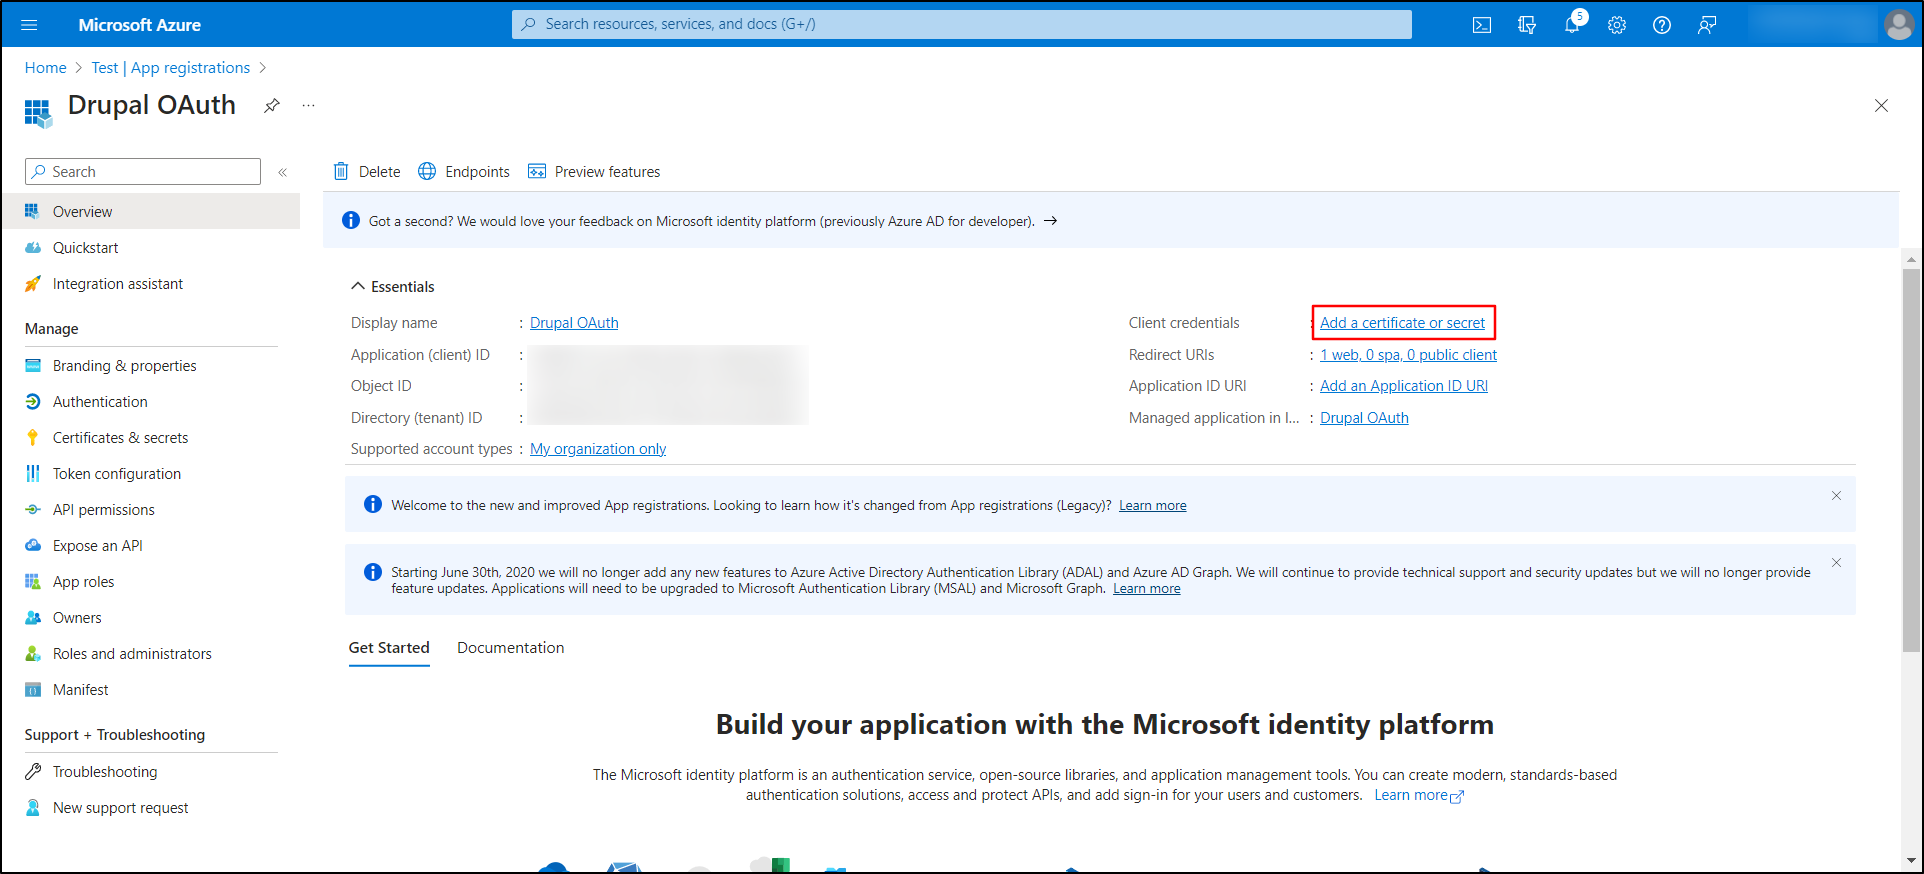 Microsoft Azure Portal - Click on Add a certificate or secret